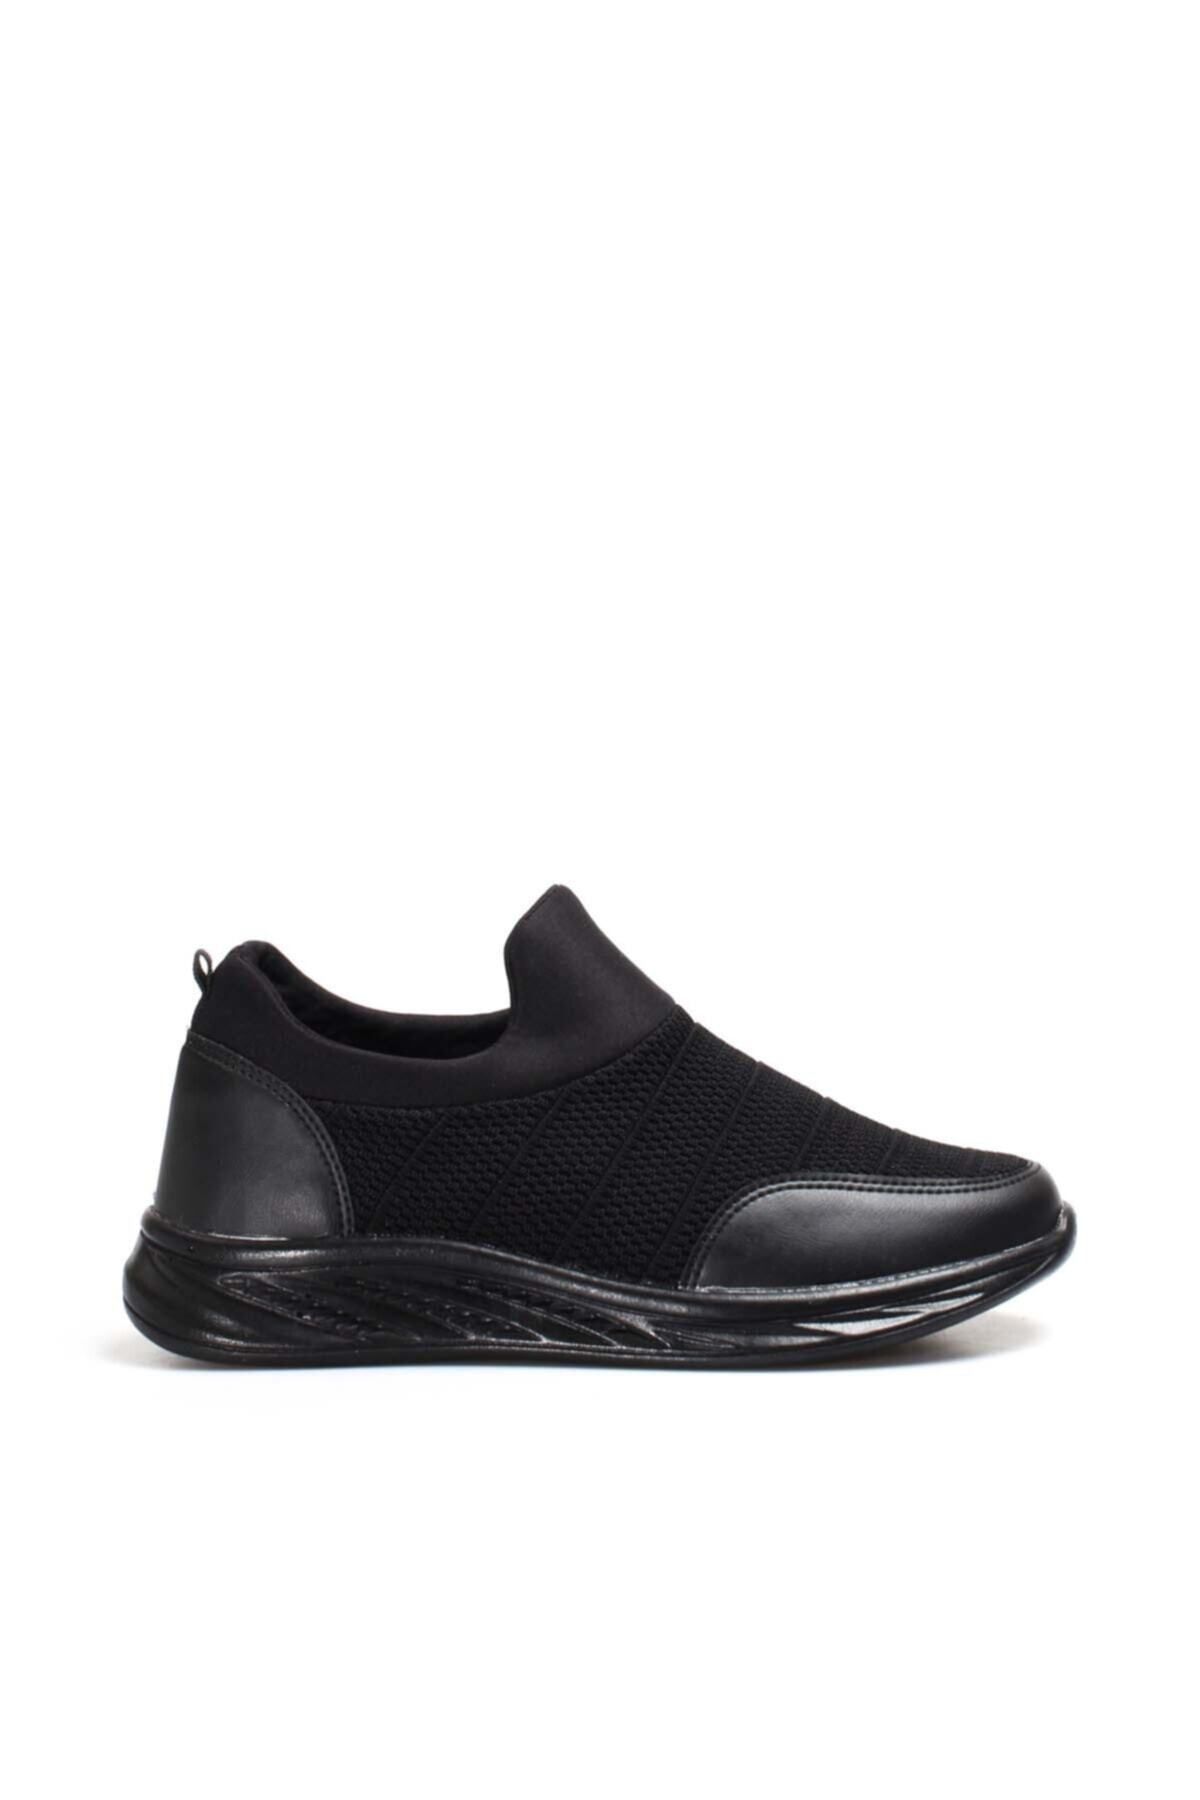 Fast Step Erkek Sneaker Günlük Rahat Esnek Spor Koşu Yürüyüş Yazlık Bağcıksız Fileli Ayakkabı Siyah 877ma022